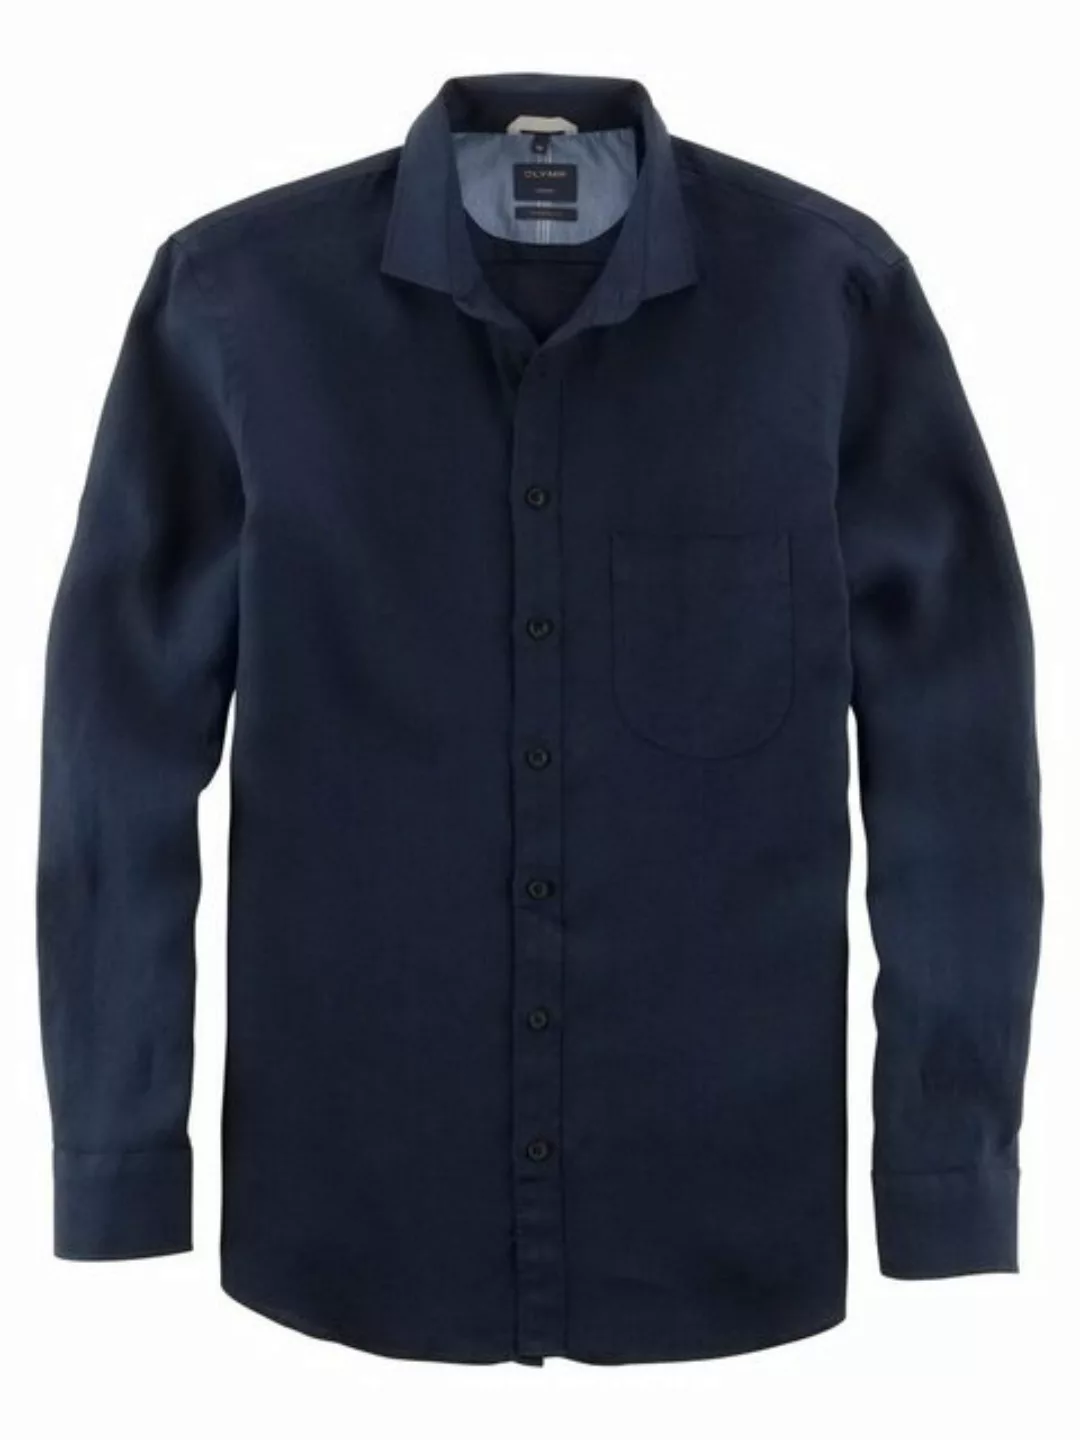 OLYMP Leinenhemd 4026/34 Hemden günstig online kaufen